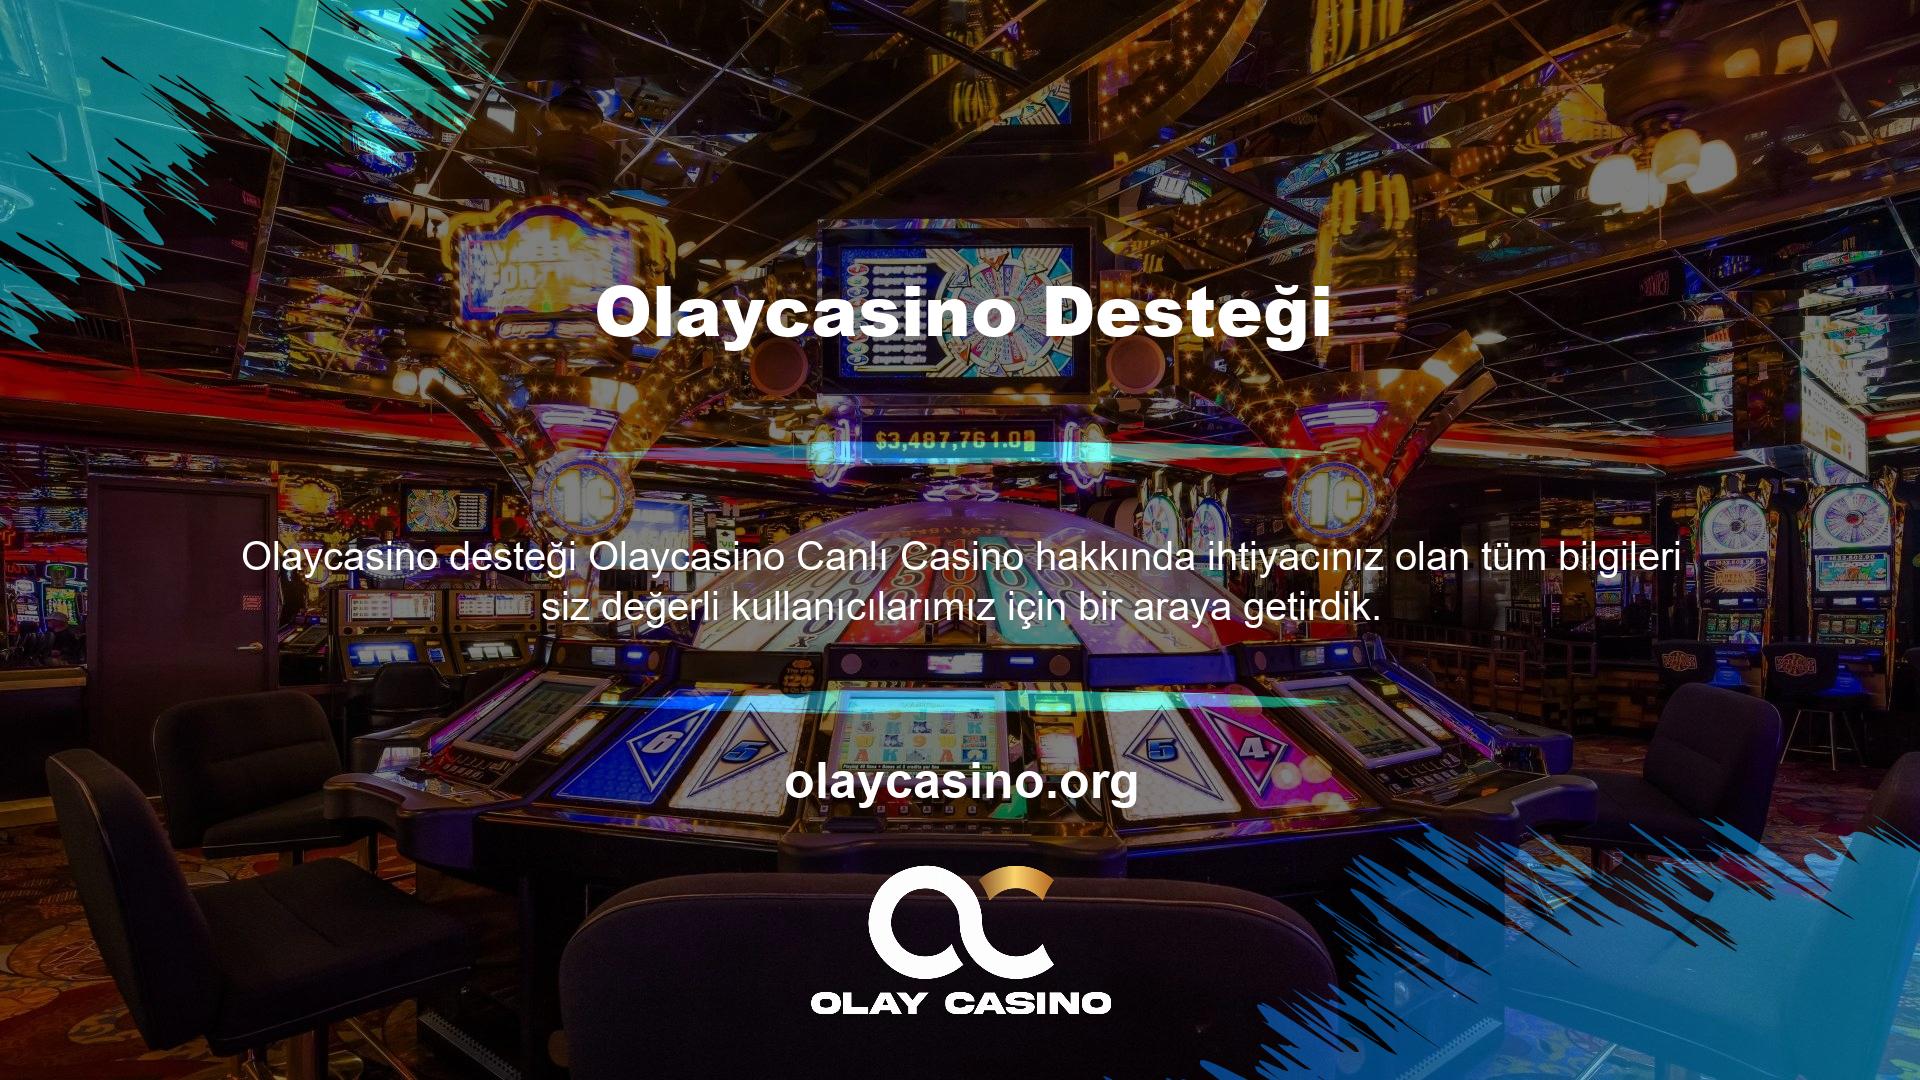 Canlı casino özelliği kullanıcıların çok yüksek bonuslar kazanmasını sağlar